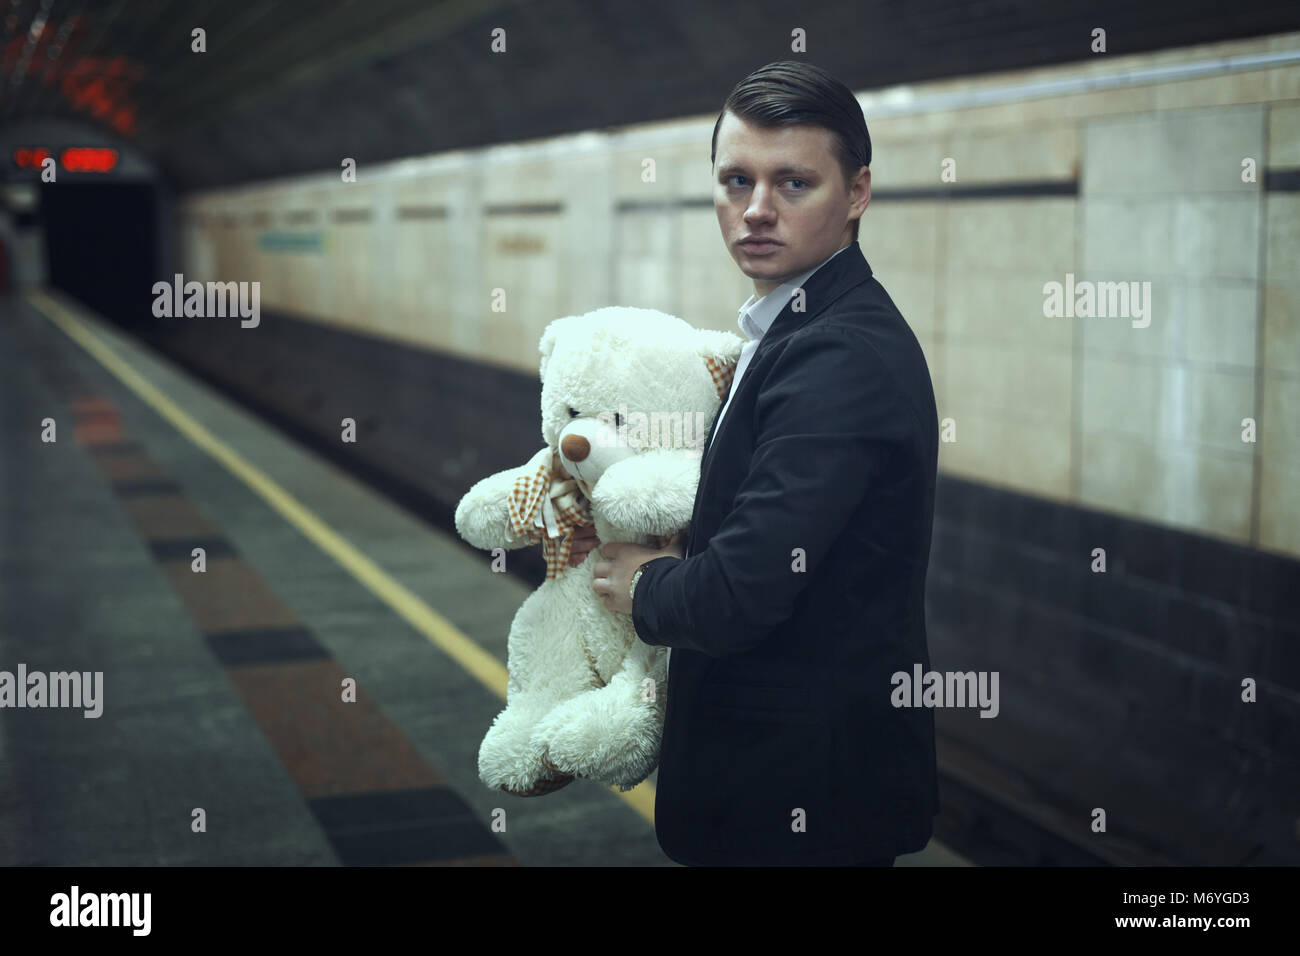 Traurige junge Mann mit einem Teddybär in seinen Händen steht in einer U-Bahn-Station. Stockfoto